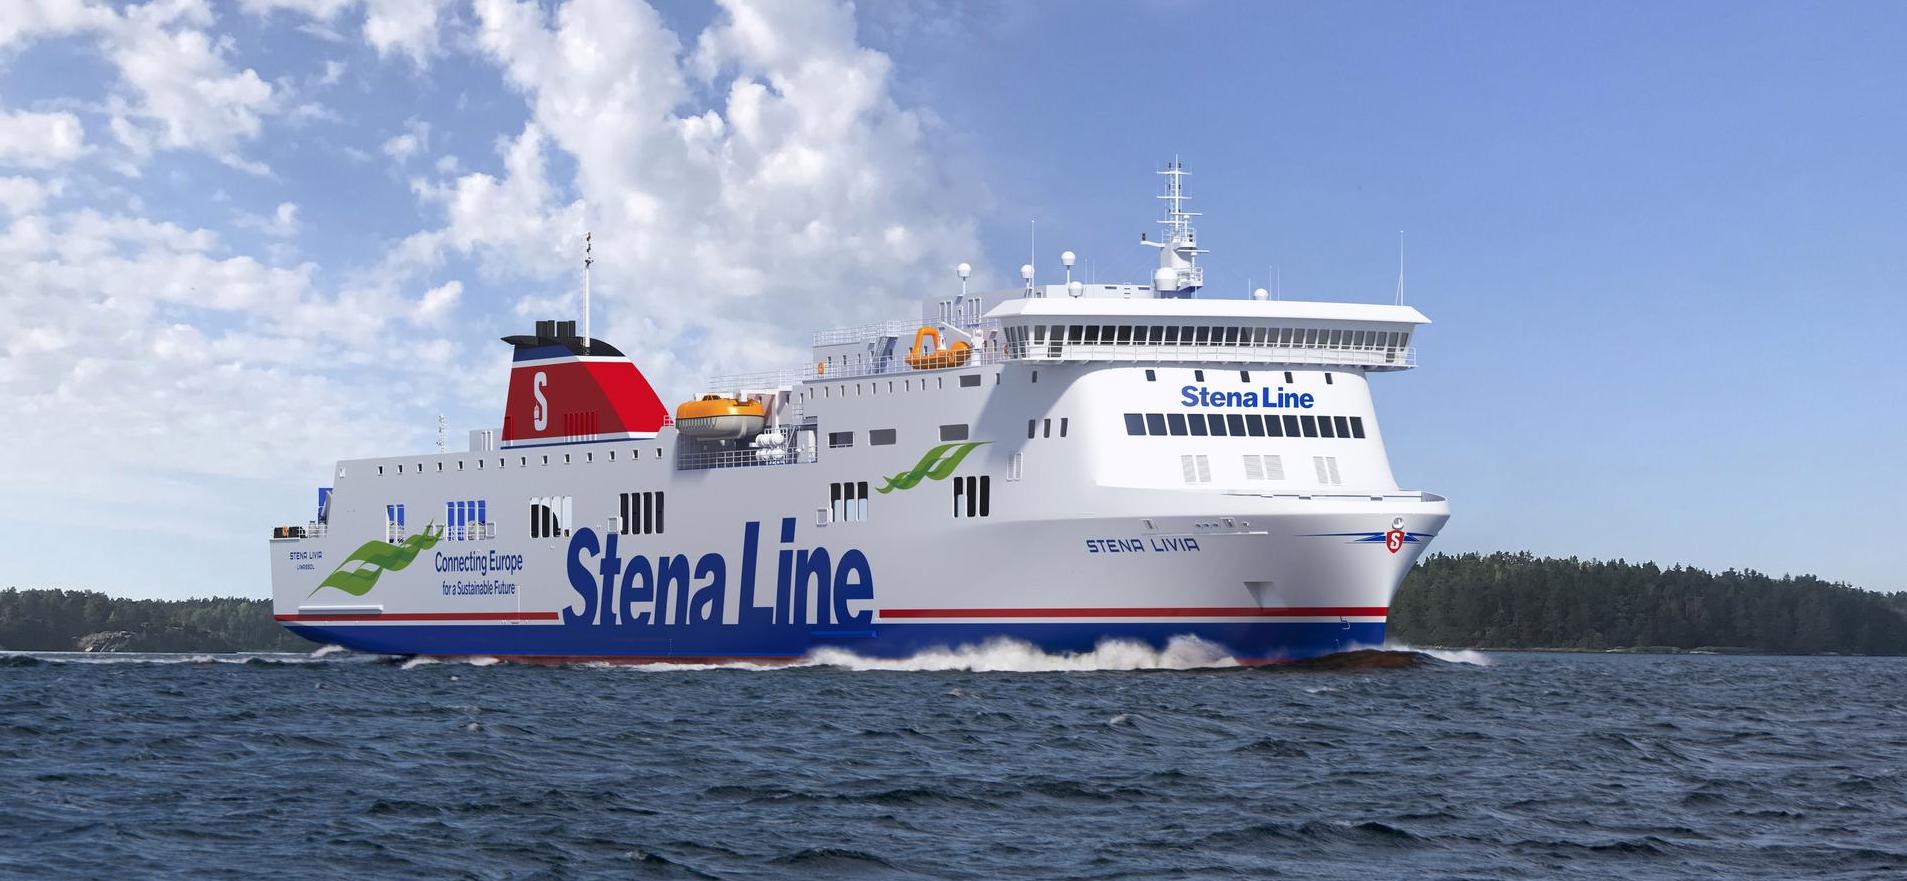 Photo of Stena Line - Stena Livia ship